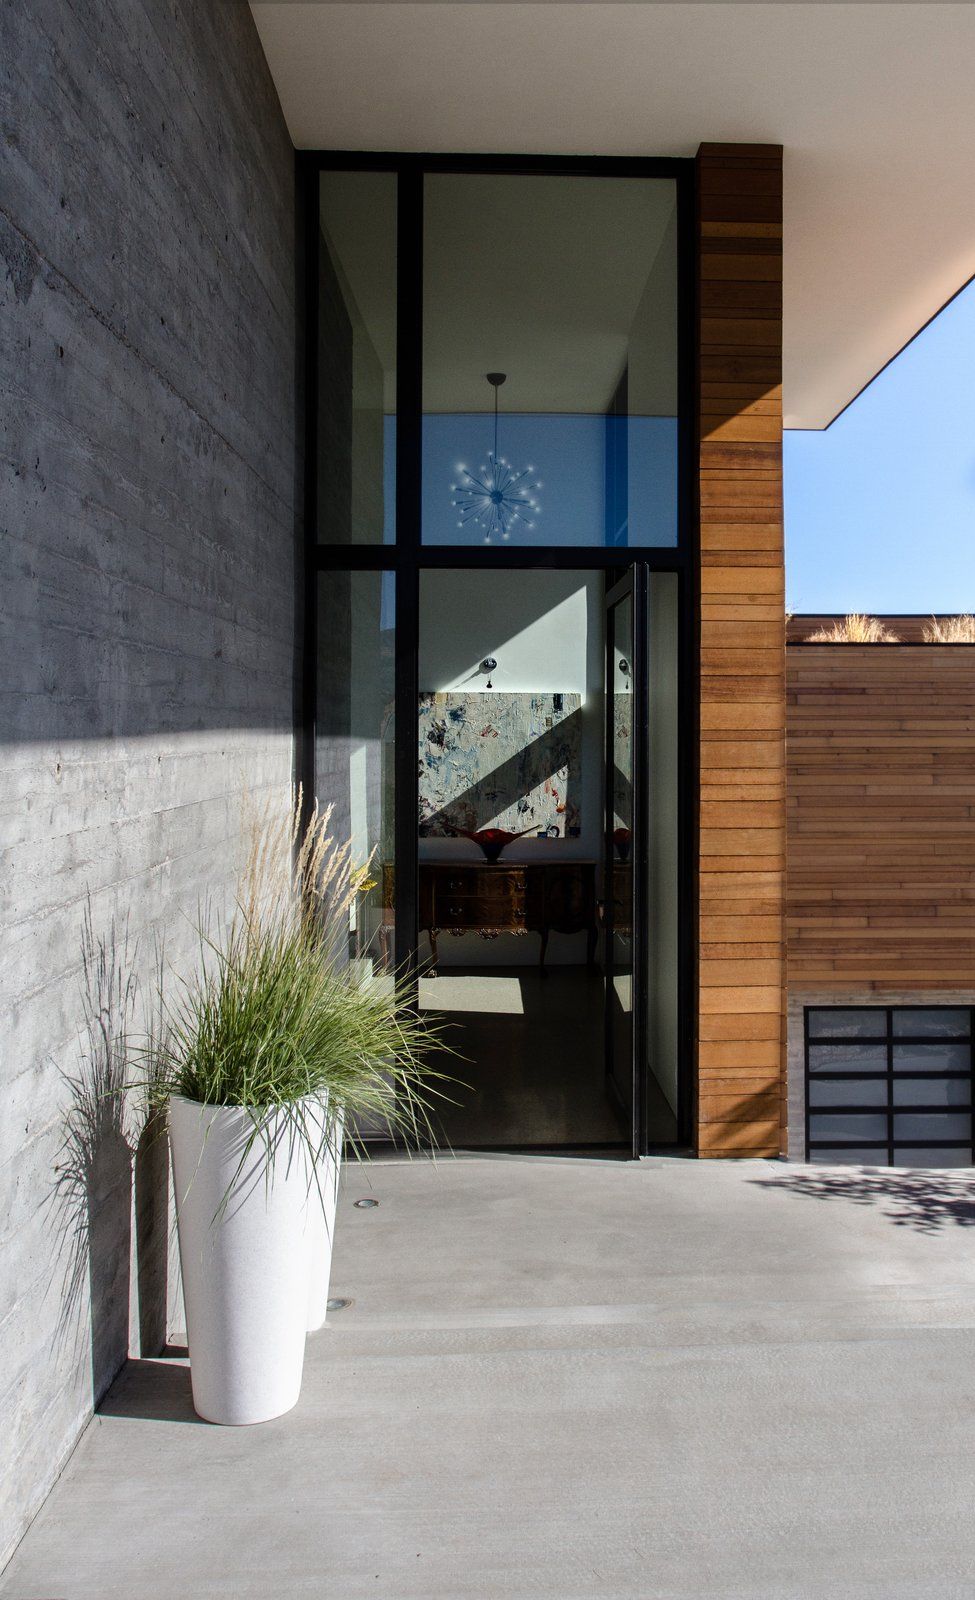 Сочетание бетона, дерева и стекла очень подходит для такого современного дома, как этот.